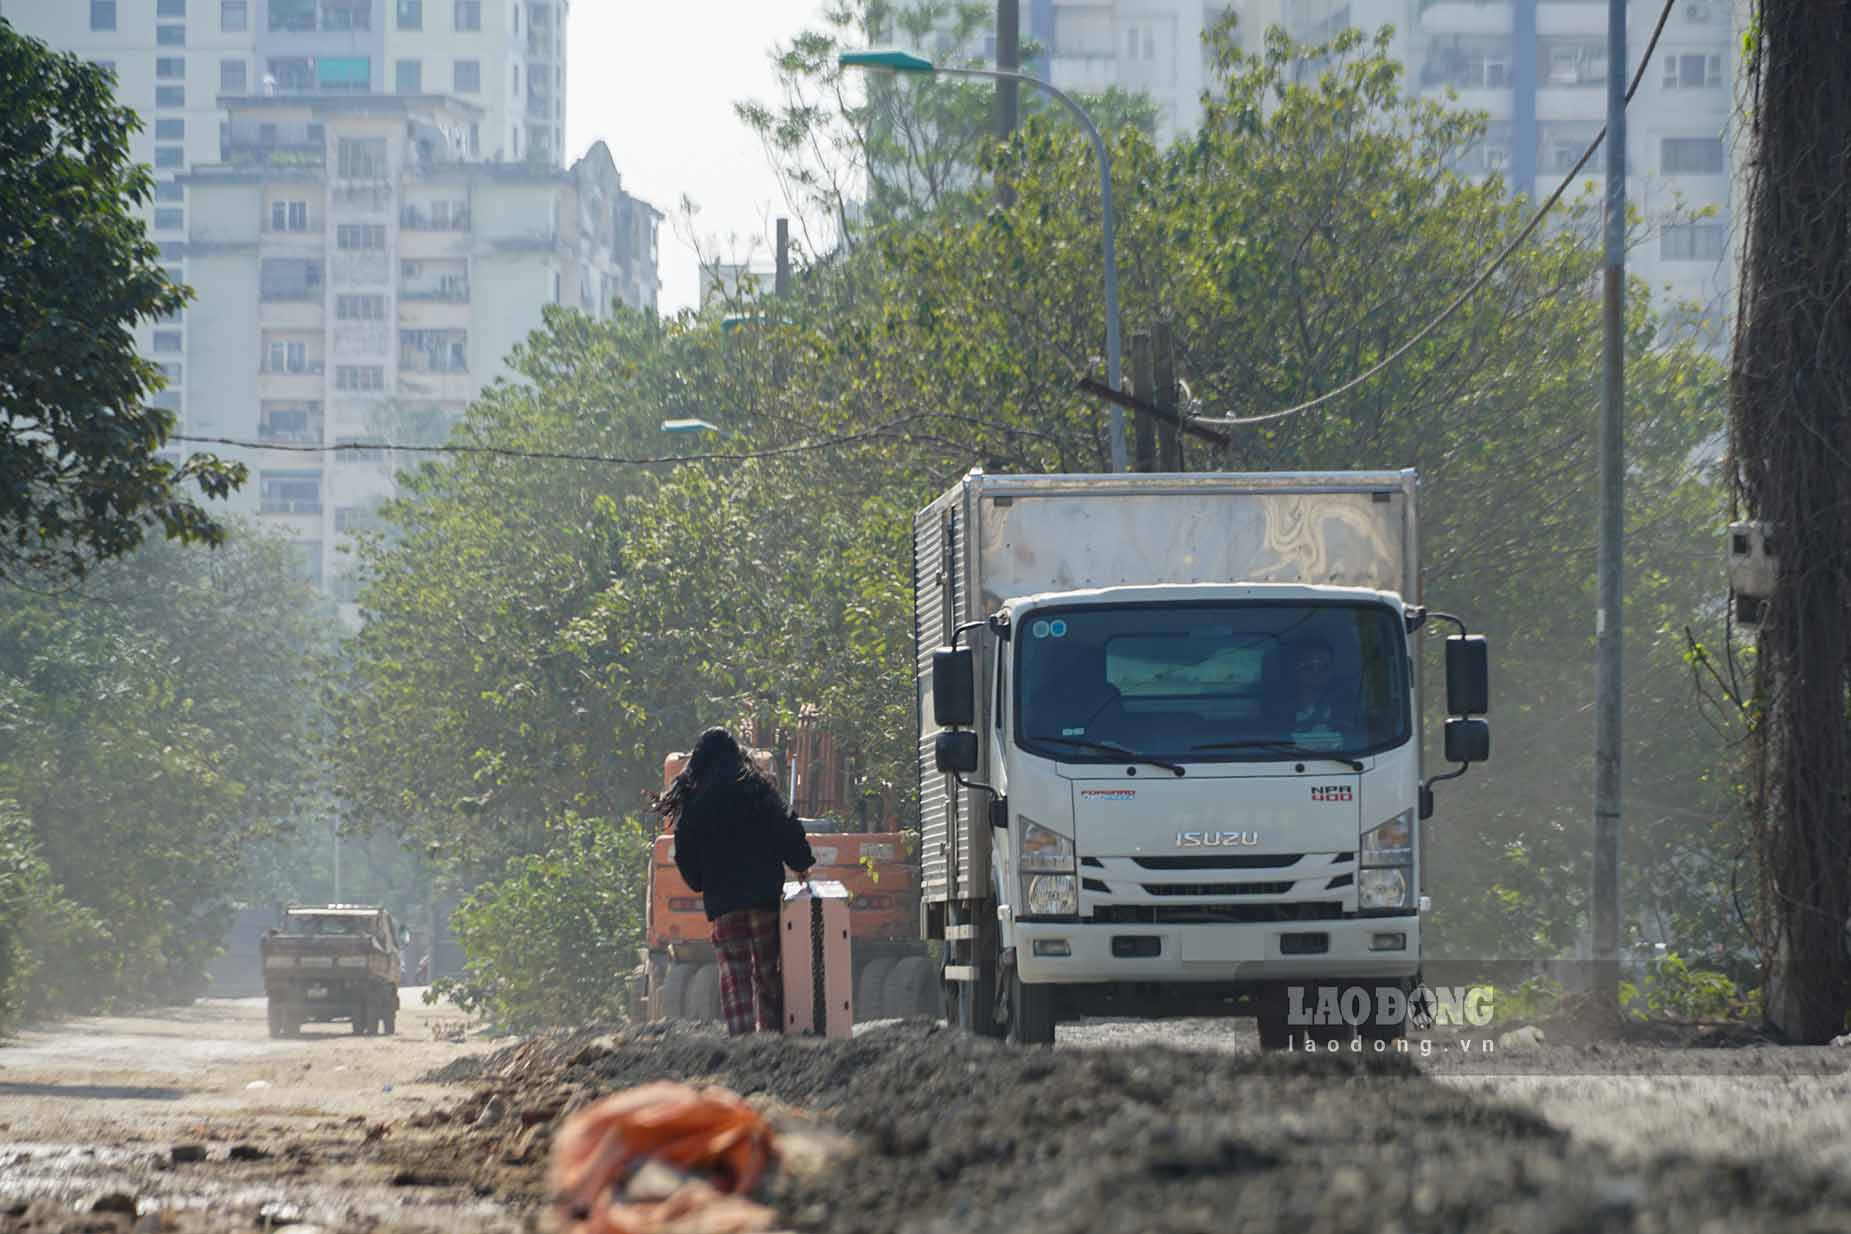 Đoạn đường Nguyễn Cảnh Dị kéo dài được mệnh danh là “con đường đau khổ” bậc nhất tại Hà Nội vì khiến việc đi lại của người dân trở nên rất khó khăn, vất vả suốt nhiều năm qua.